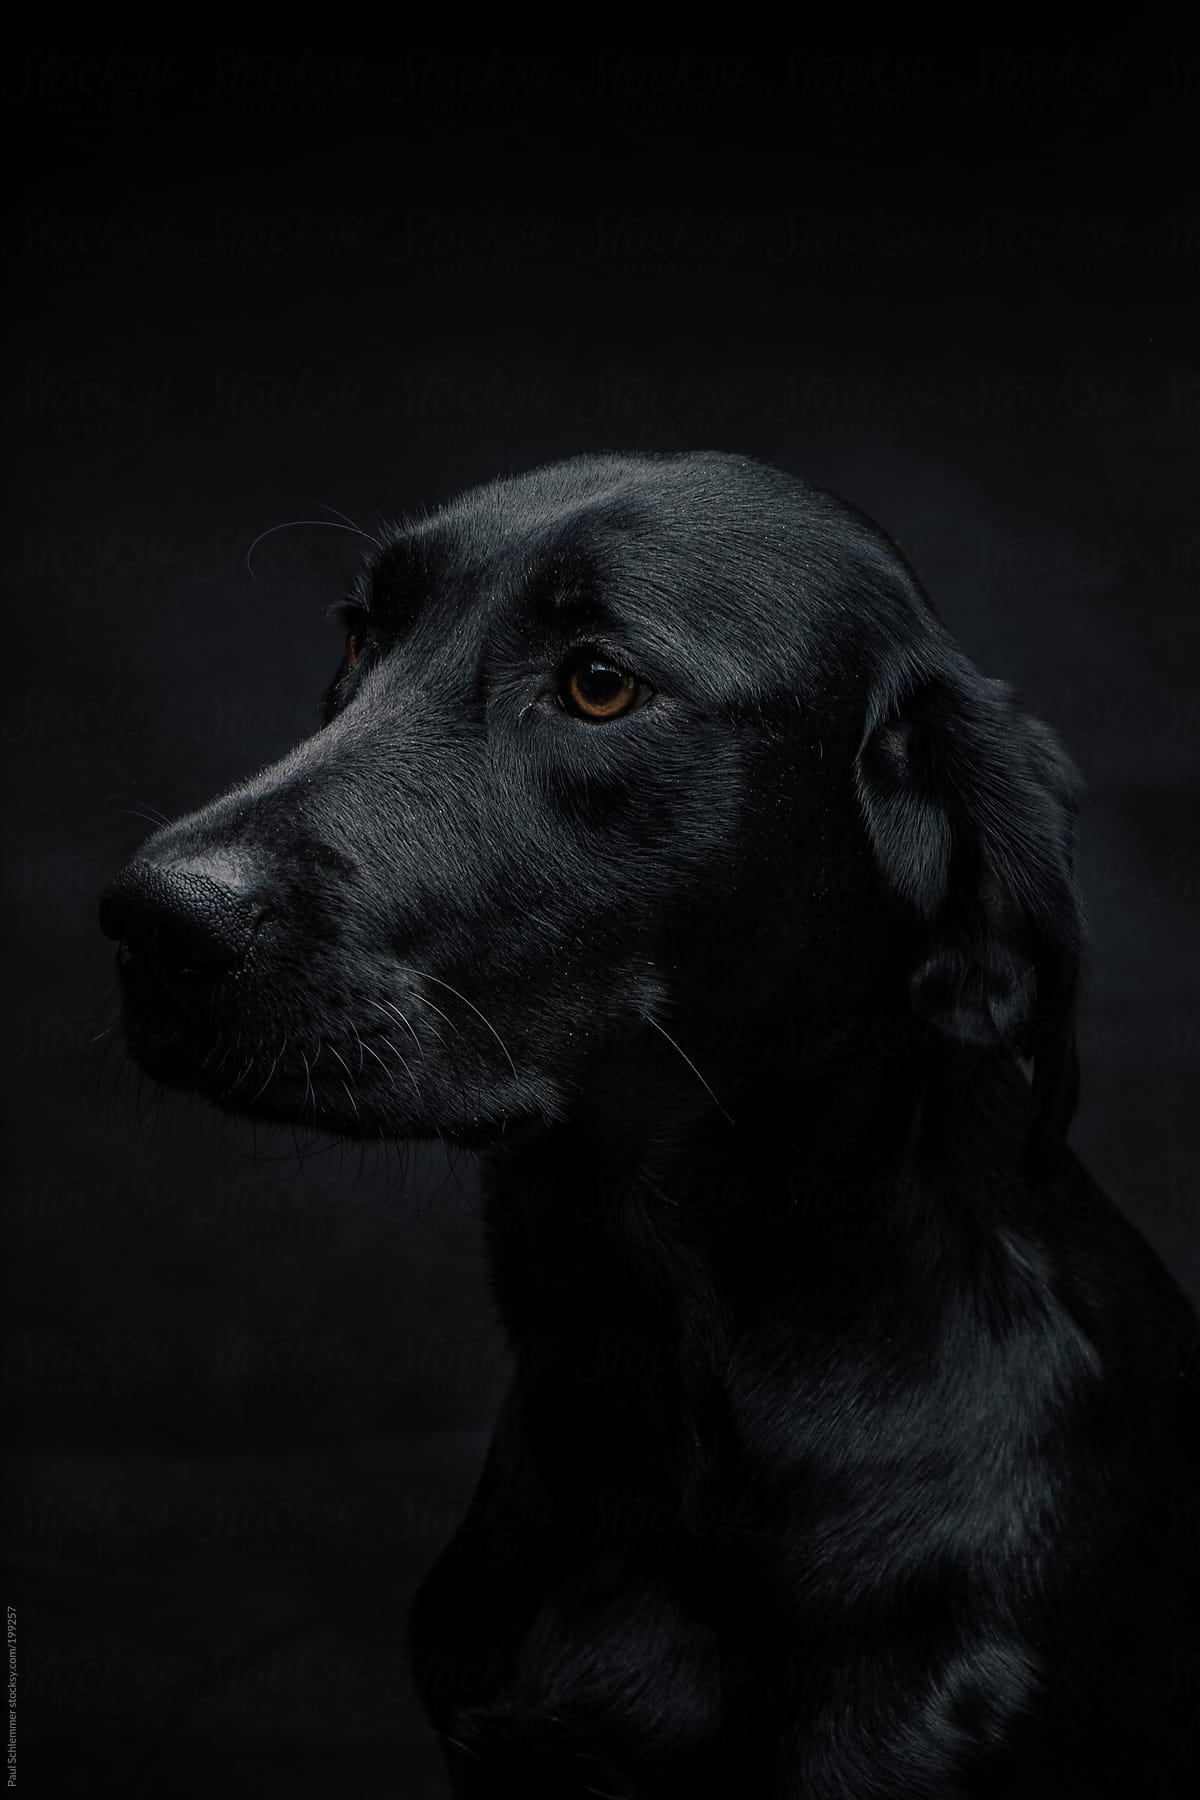 dark portrait of a labrador dog